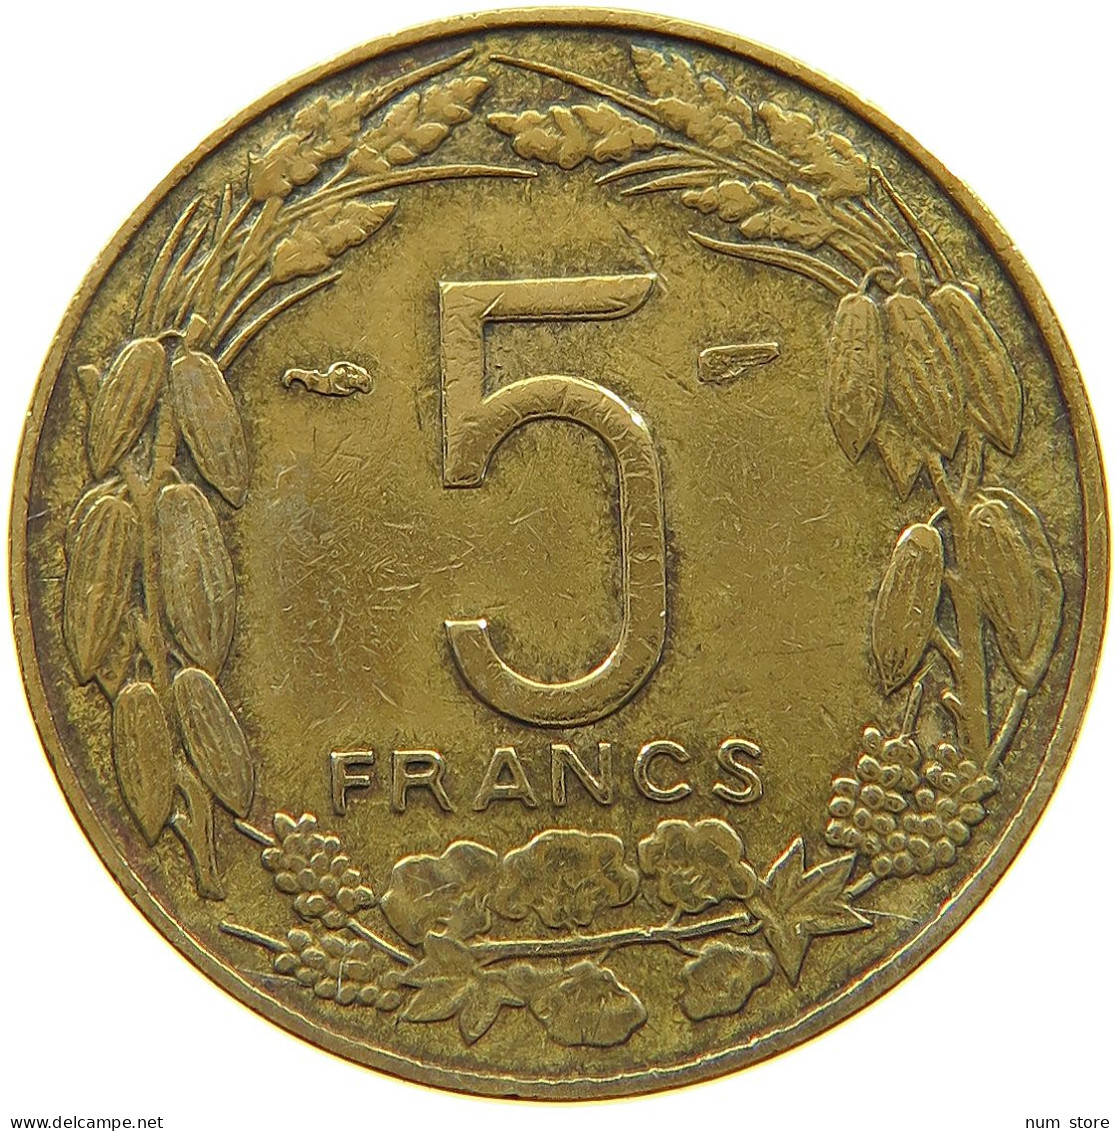 CAMEROON 5 FRANCS 1958  #a021 0205 - Cameroon